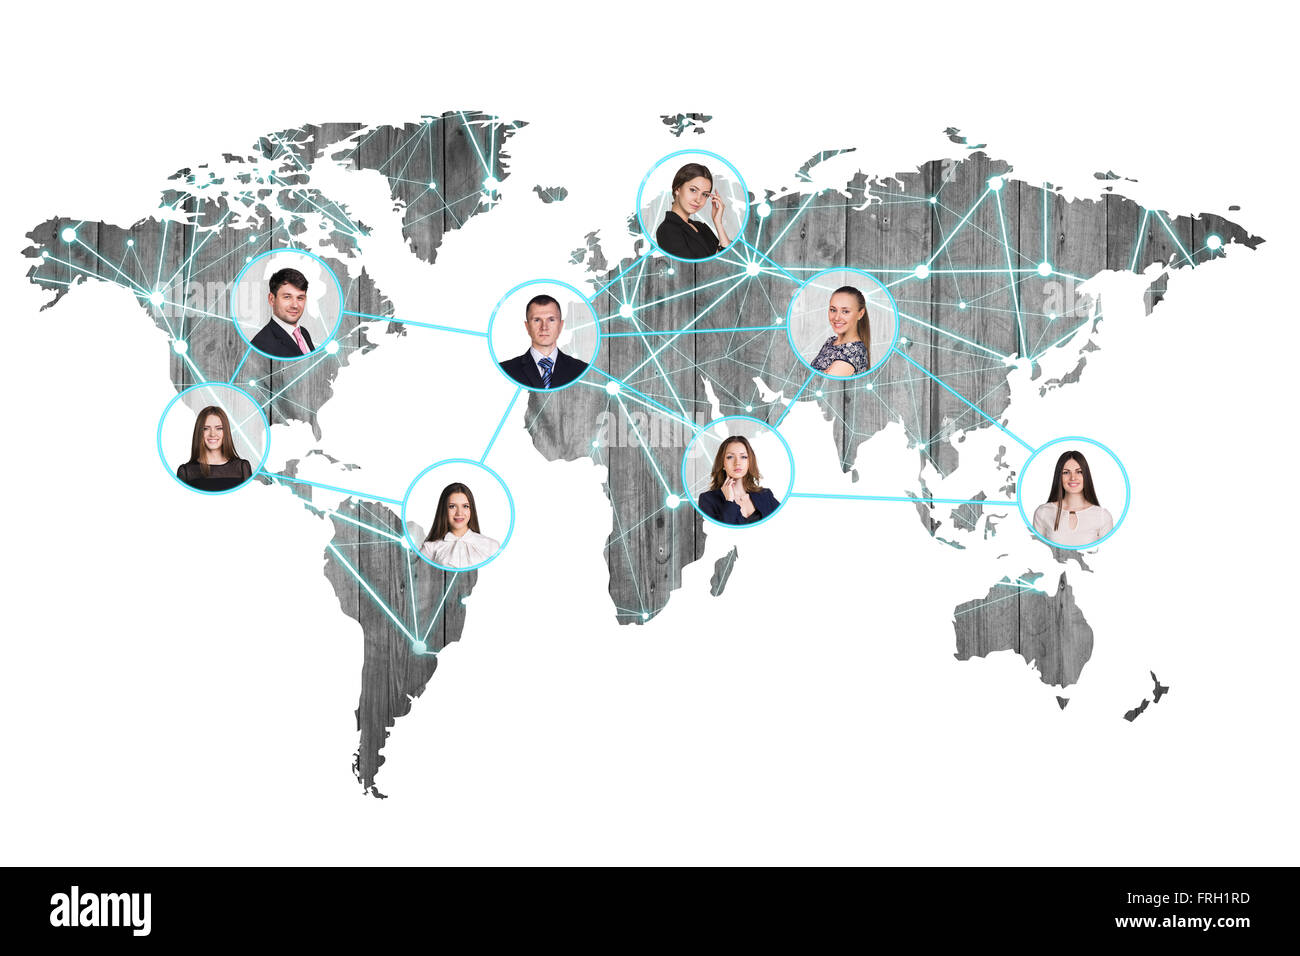 Les gens d'affaires sur digital world map Banque D'Images